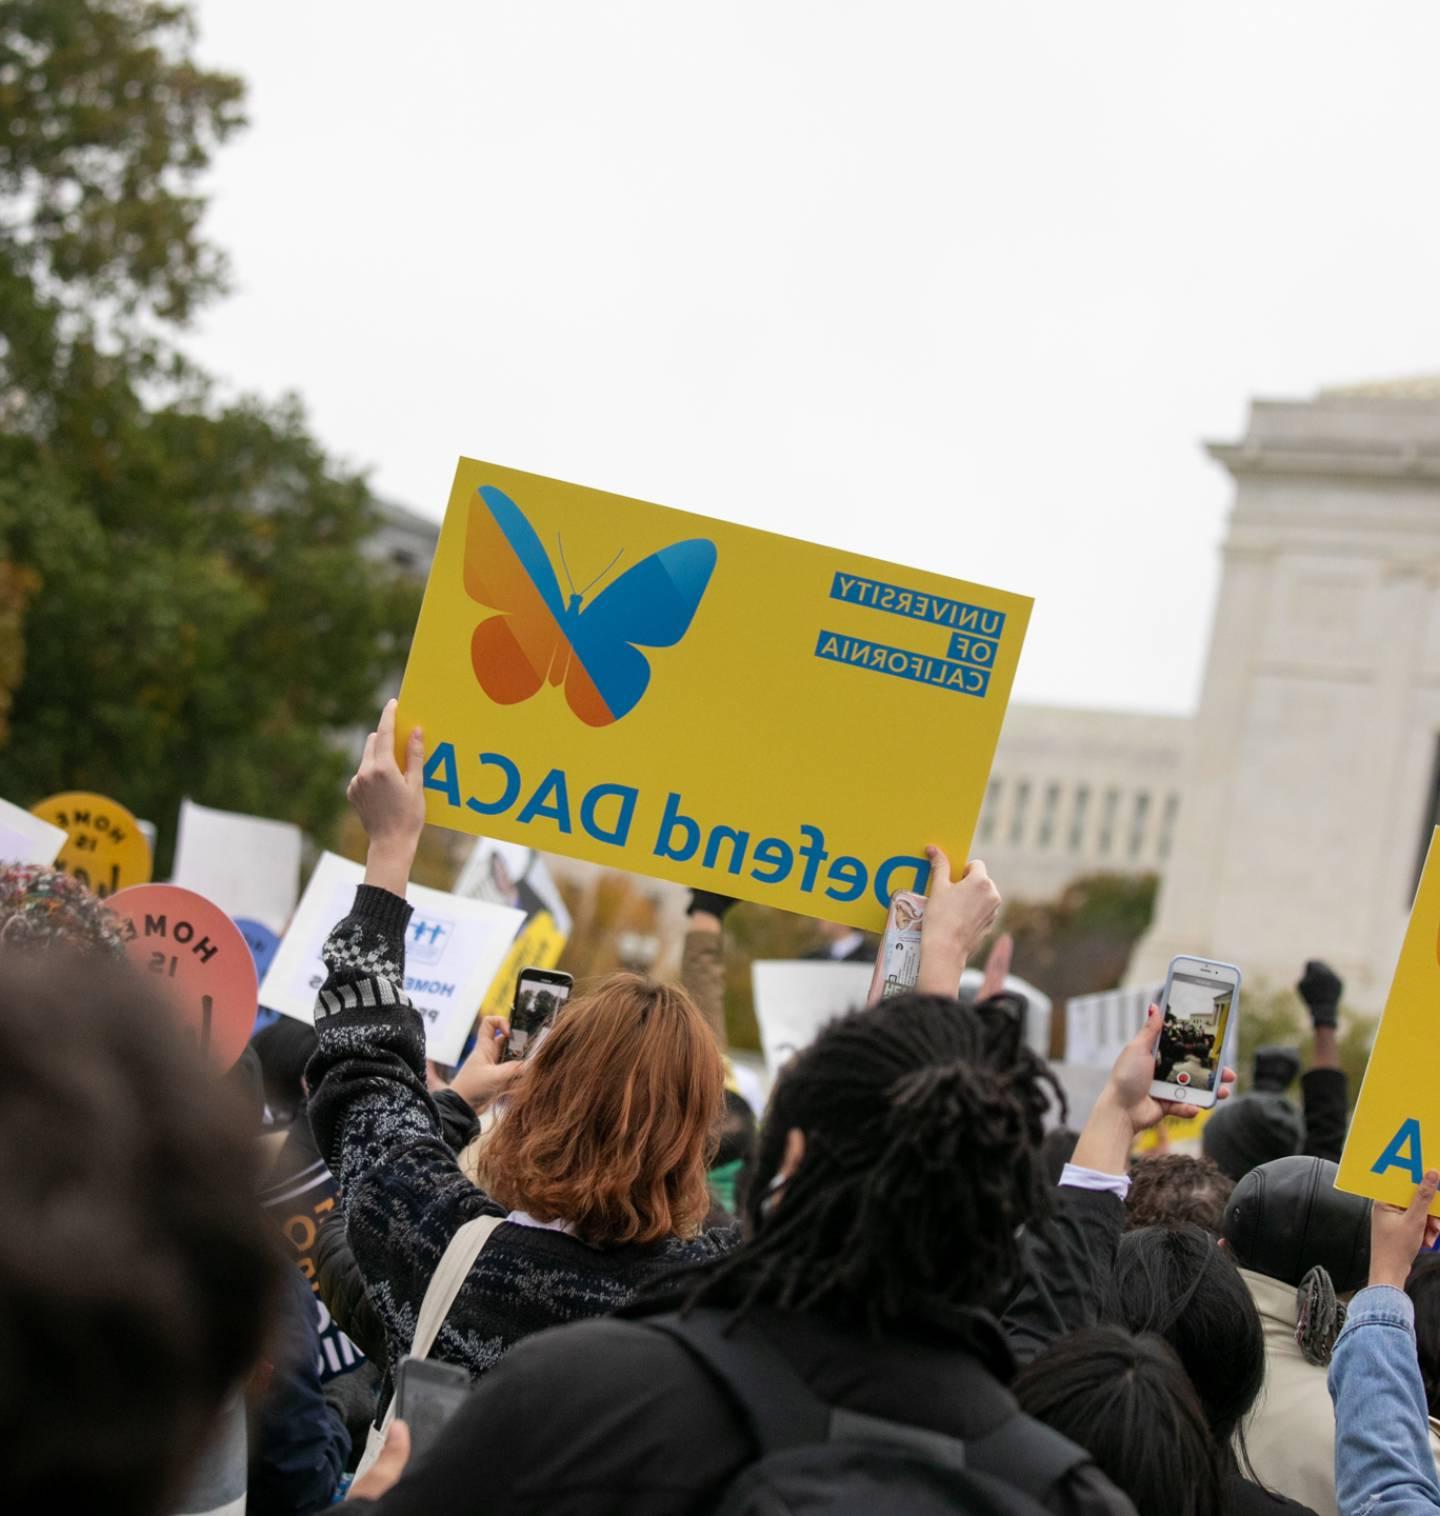 人群在空中举着“捍卫DACA”的标语。